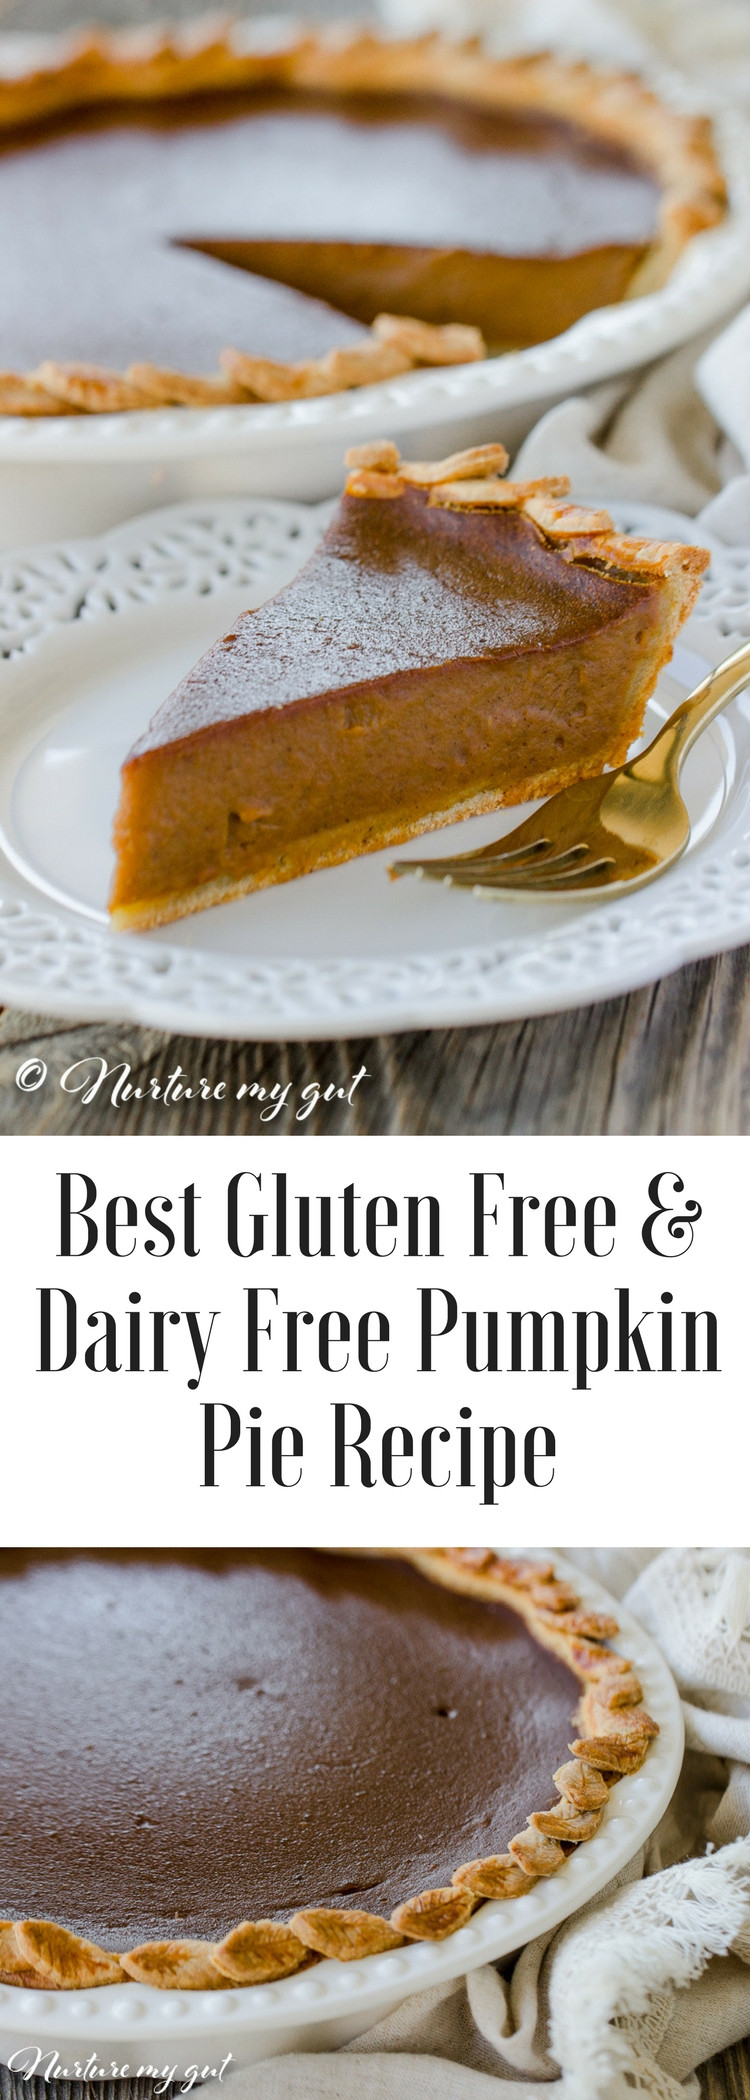 Gluten Free Dairy Free Pumpkin Recipes
 Gluten Free Dairy Free Pumpkin Pie Recipe Best Pie Recipe 